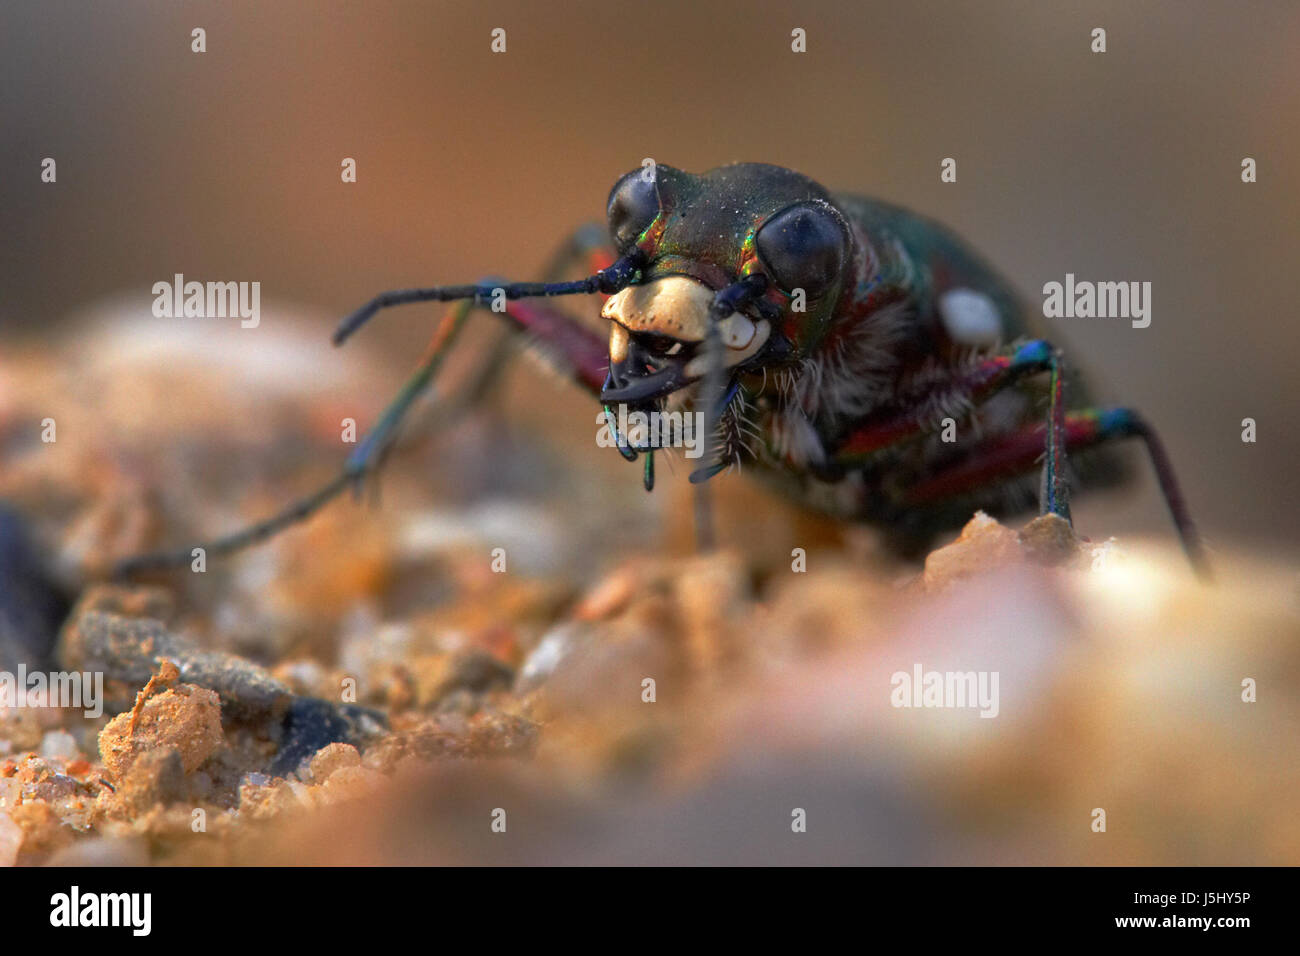 Beine Makro Nahaufnahme Makro Aufnahme hautnah Ansicht Insekt Insekten Augen Käfer Stockfoto